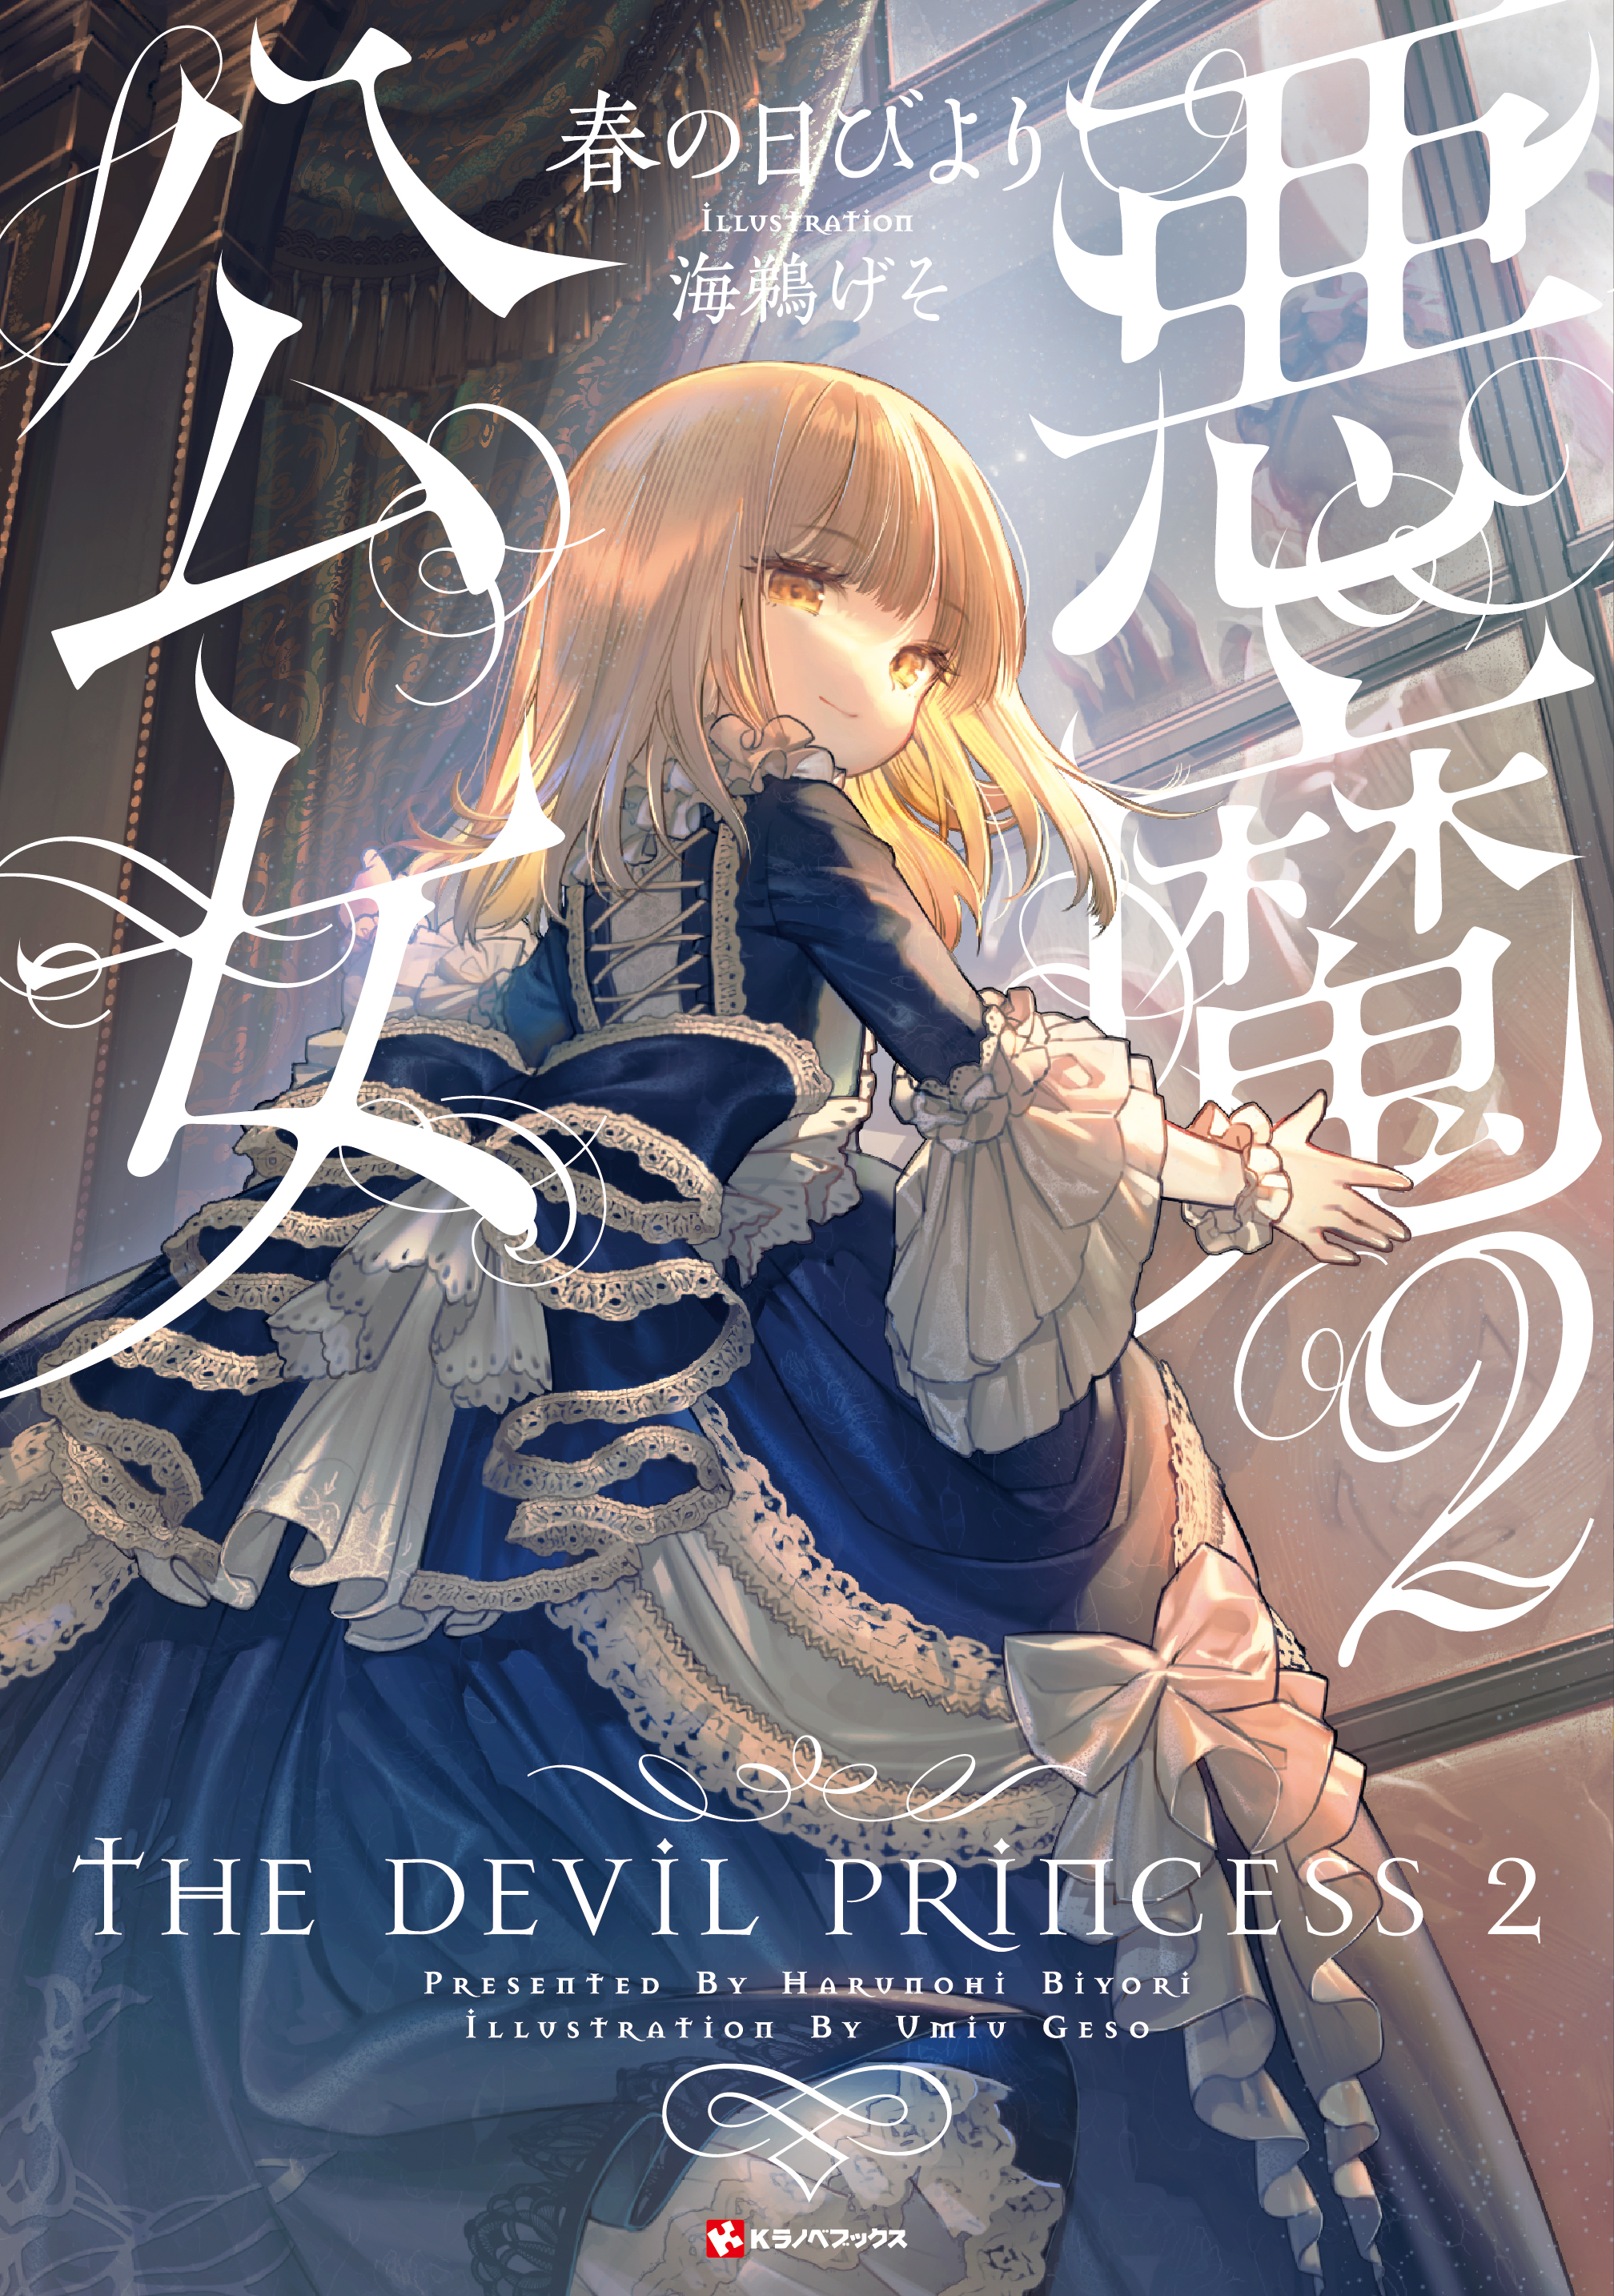 Demon Noble Girl ~Story of a Careless Demon~ - Novel Updates